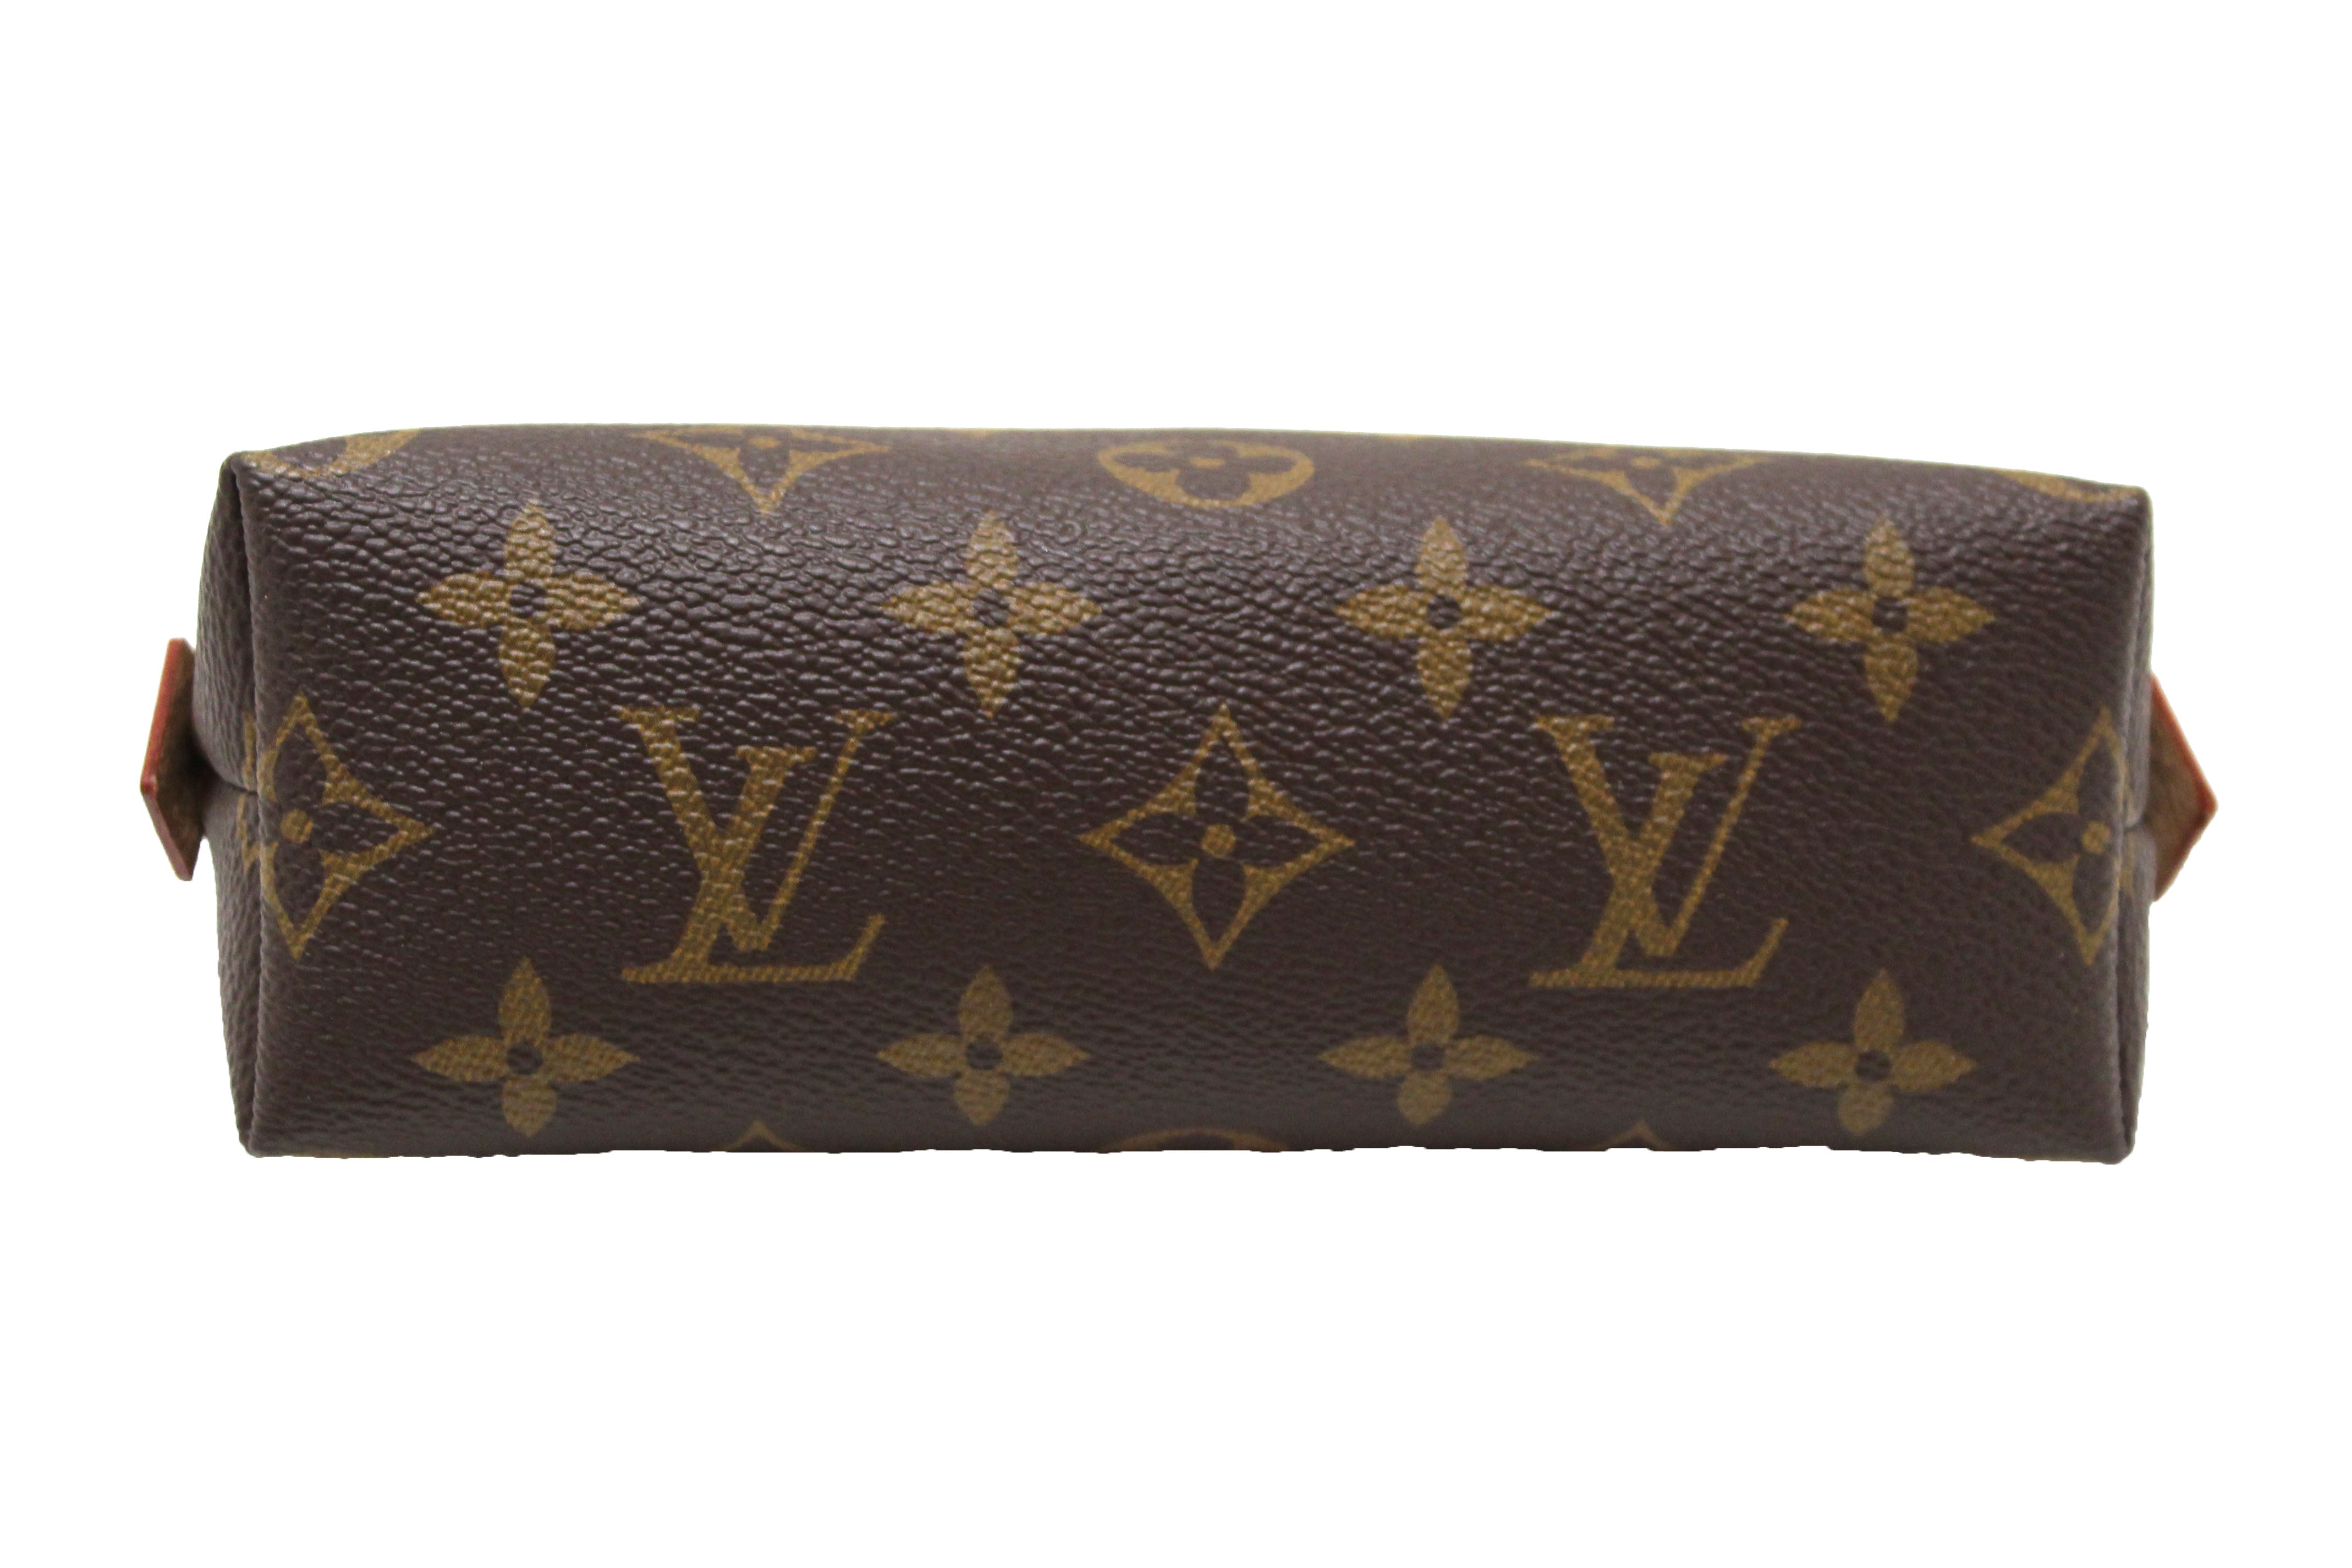 Authentic Louis Vuitton Classic Monogram Canvas Cosmetic Pouch